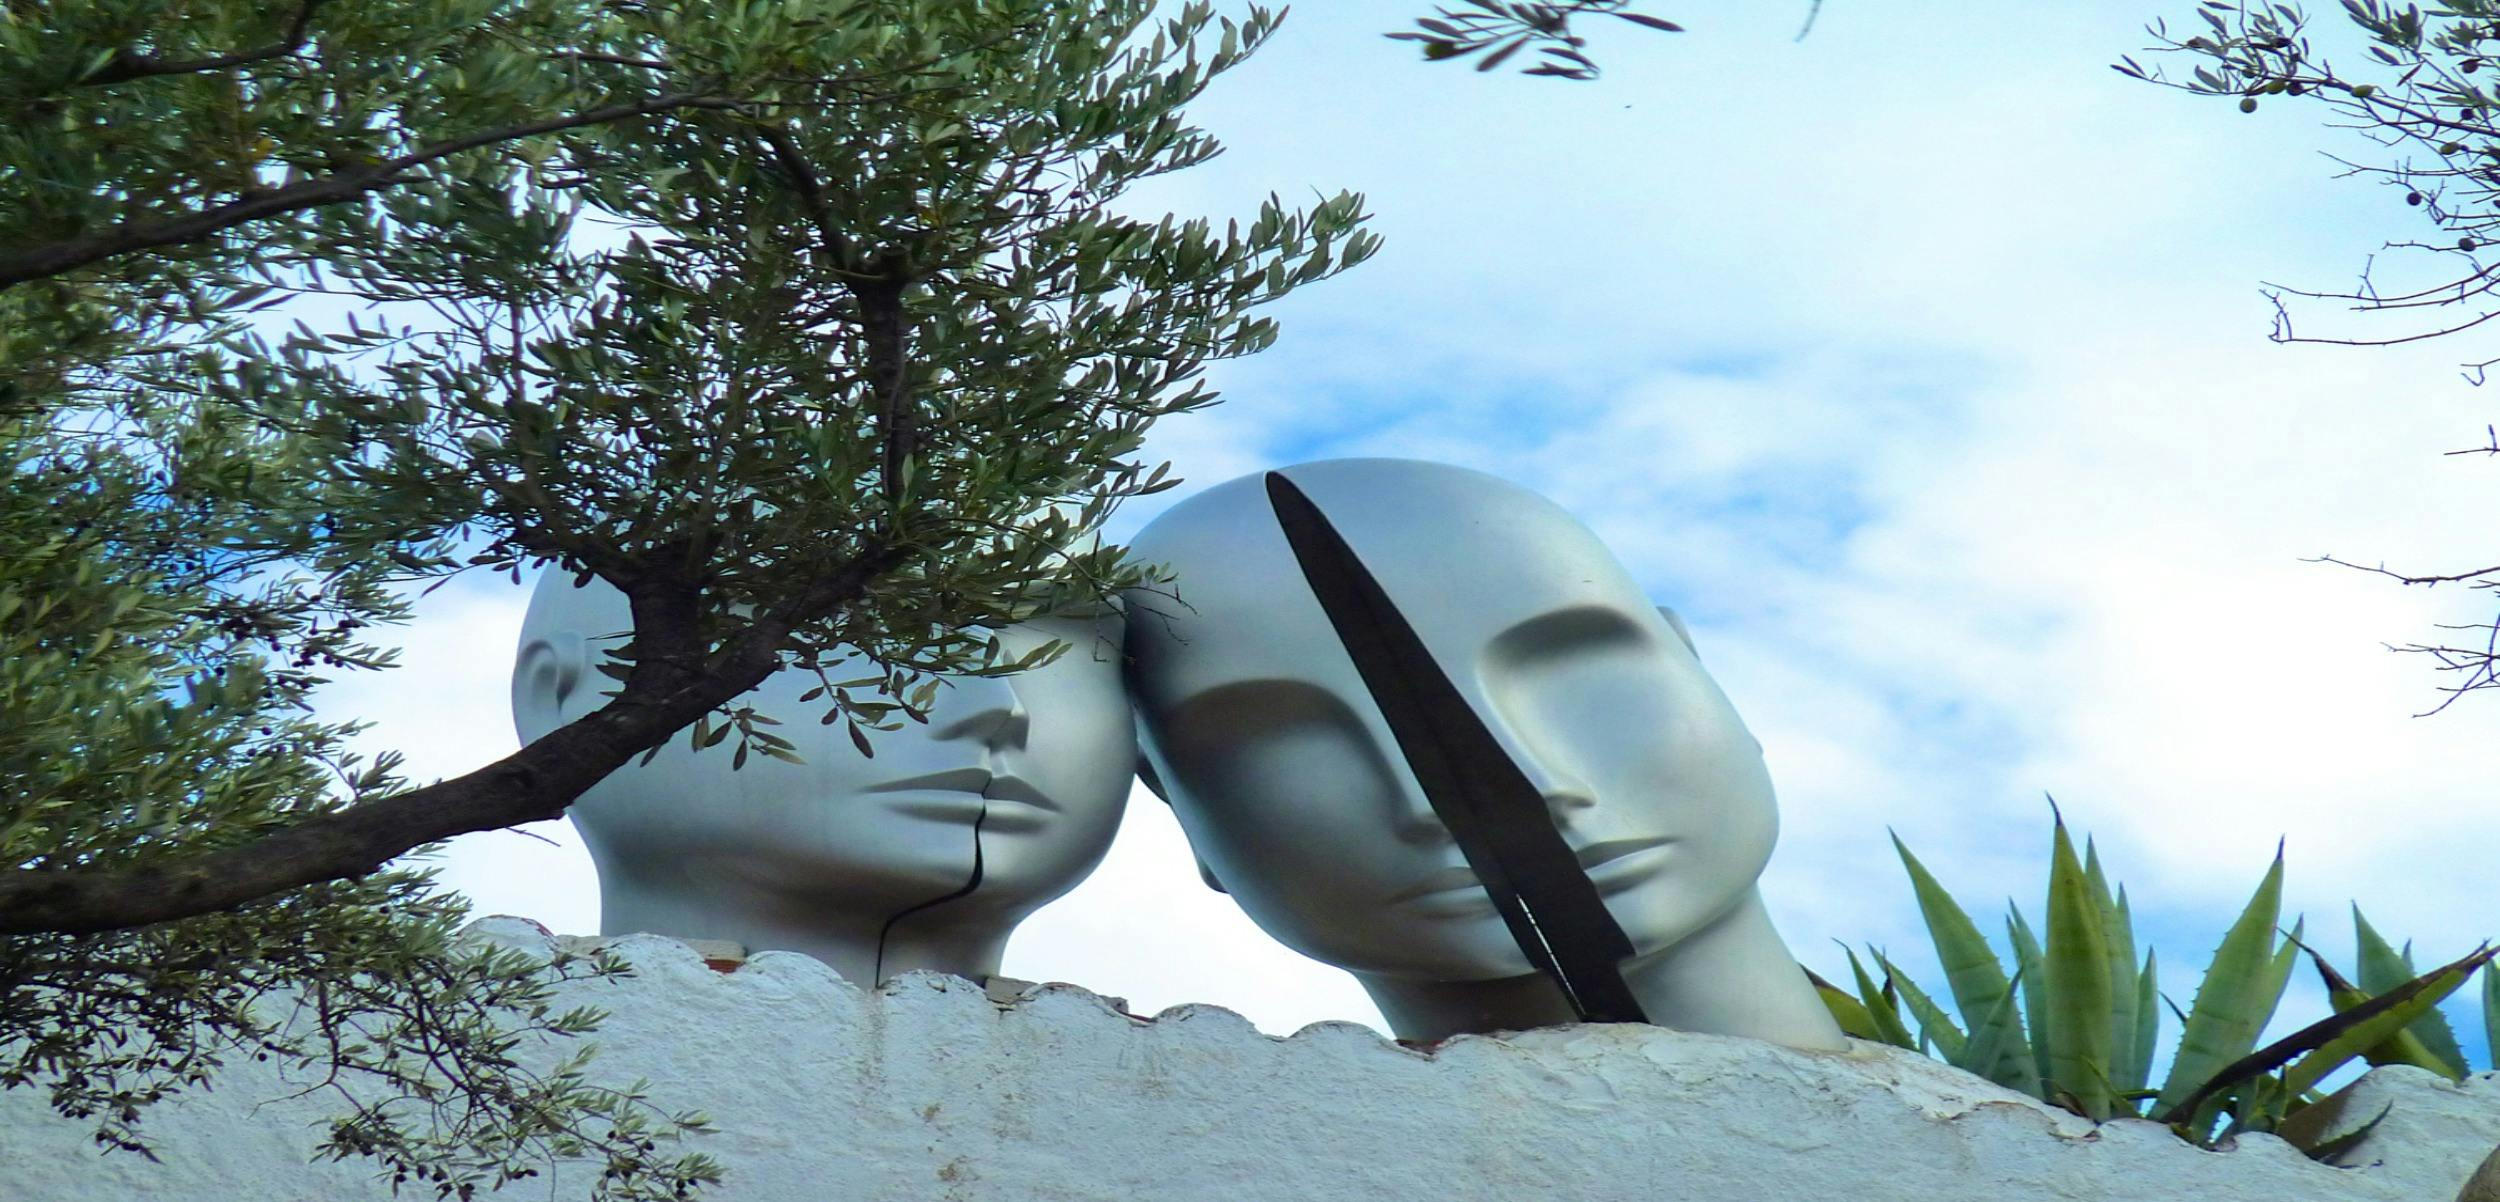 Visite du musée Dali, de Figueres et de Cadaqués au départ de Barcelone